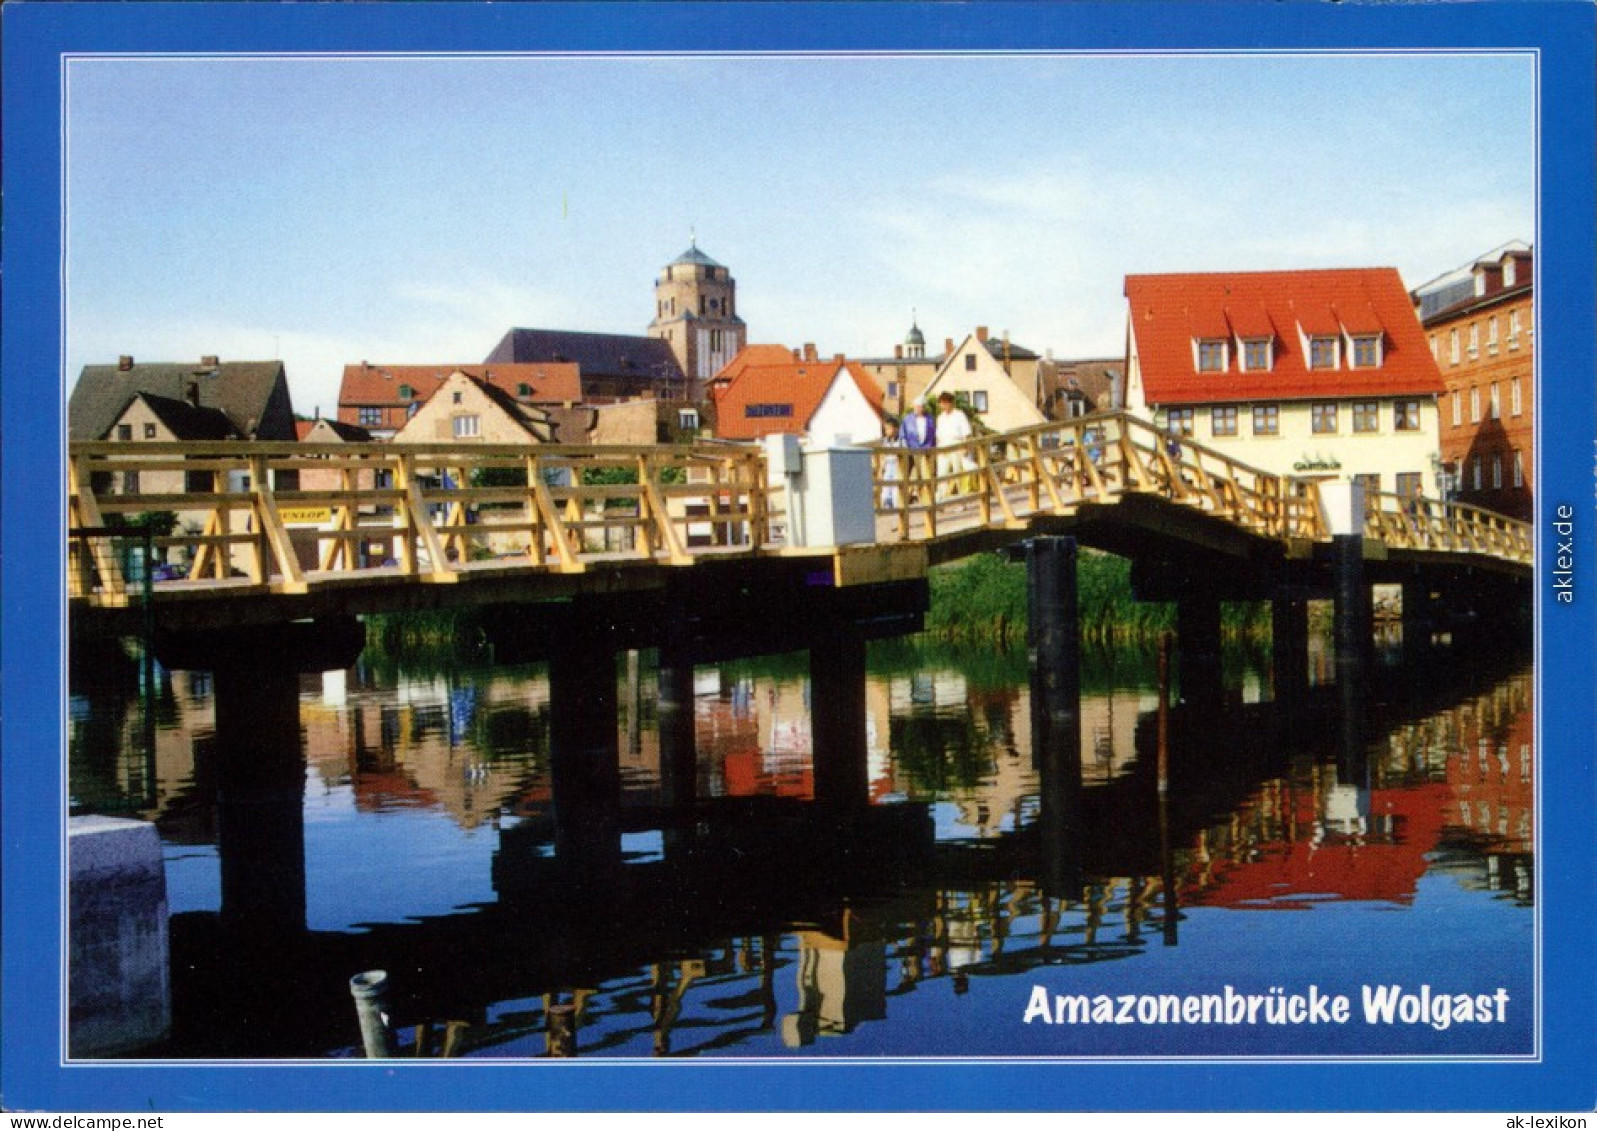 Ansichtskarte Wolgast Amazonenbrücke Am Museumshafen 2000 - Wolgast